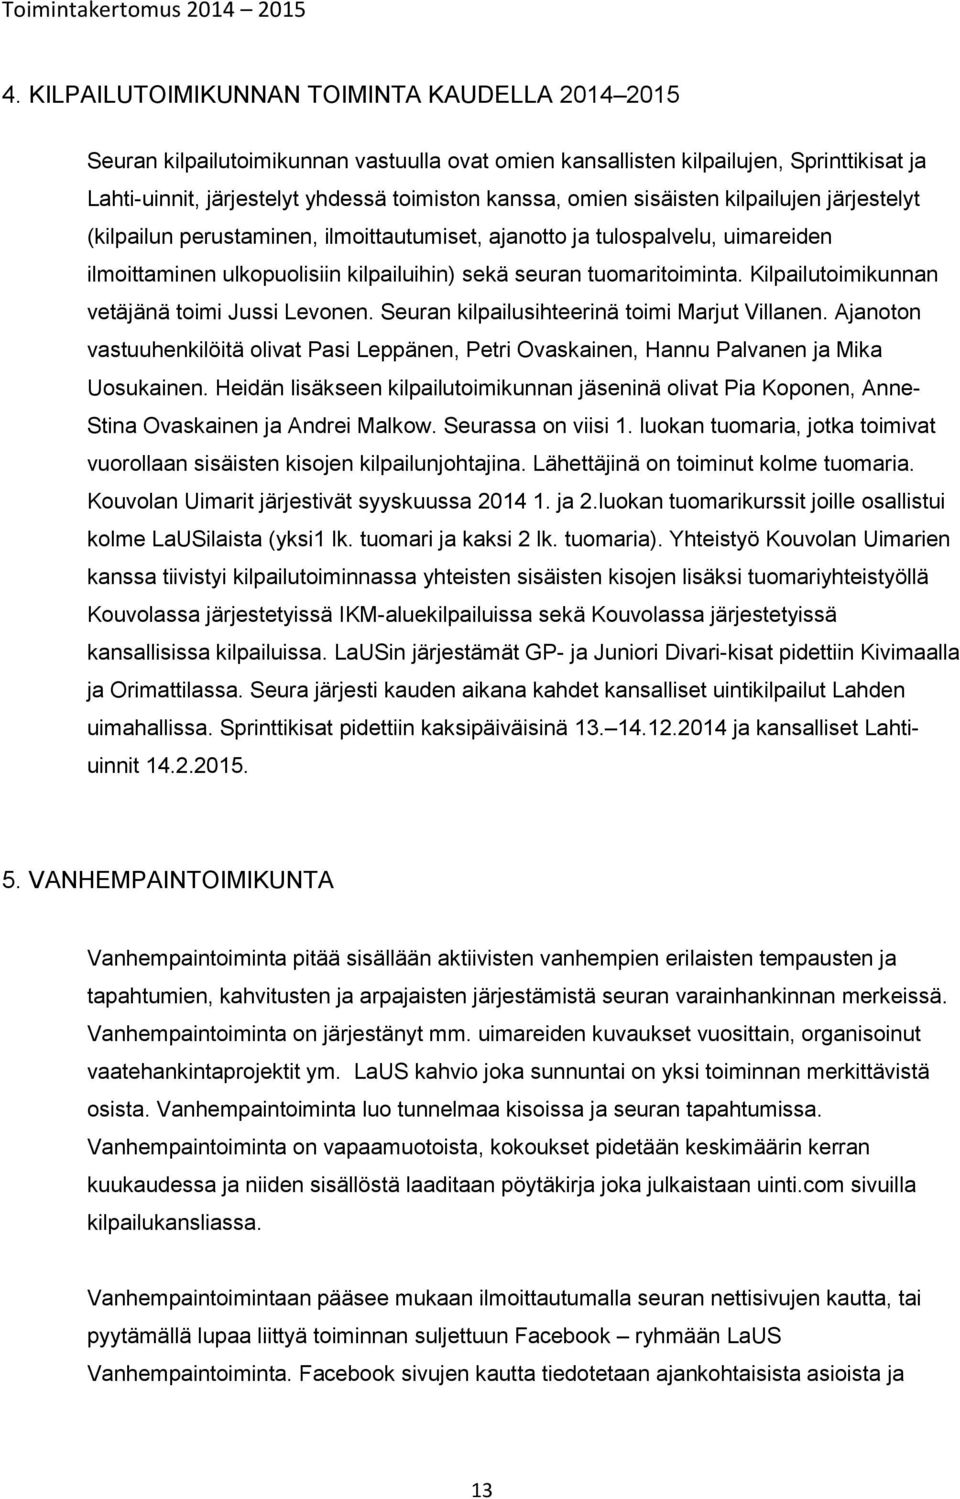 Kilpailutoimikunnan vetäjänä toimi Jussi Levonen. Seuran kilpailusihteerinä toimi Marjut Villanen. Ajanoton vastuuhenkilöitä olivat Pasi Leppänen, Petri Ovaskainen, Hannu Palvanen ja Mika Uosukainen.